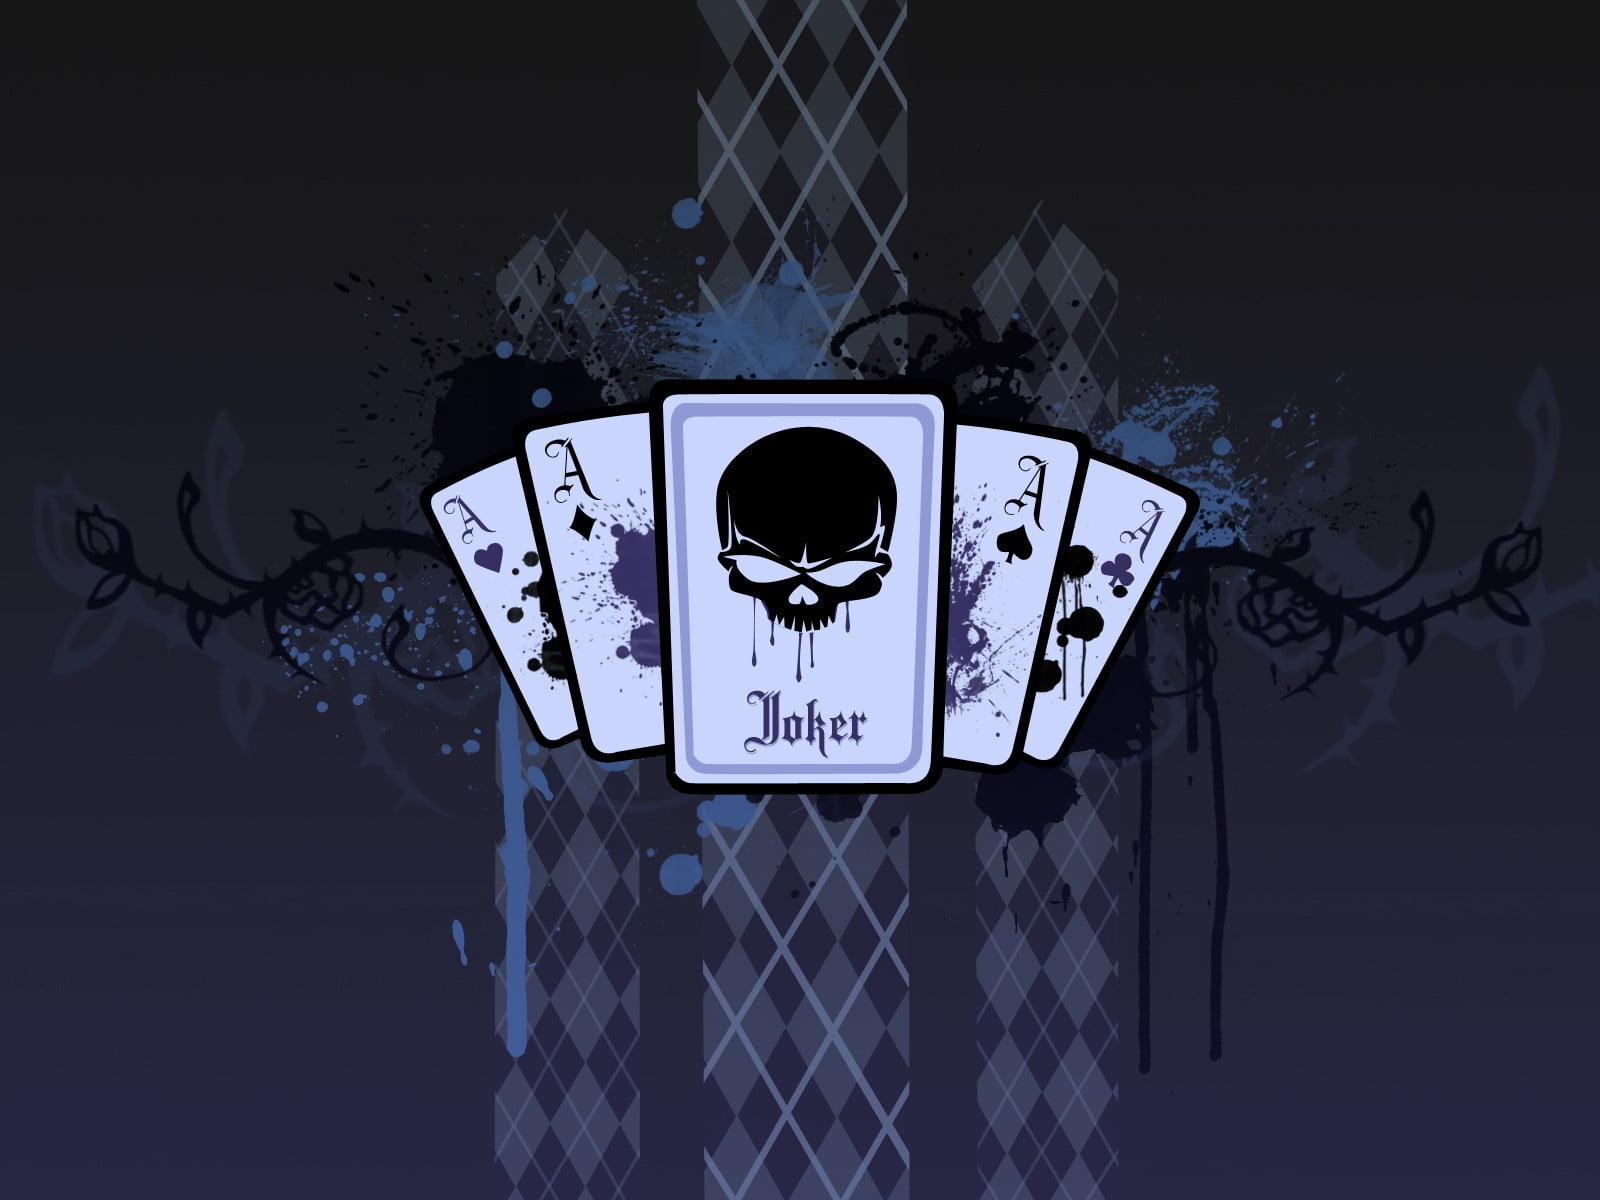 Joker card illustration, blue, backgrounds, vector, symbol, sign